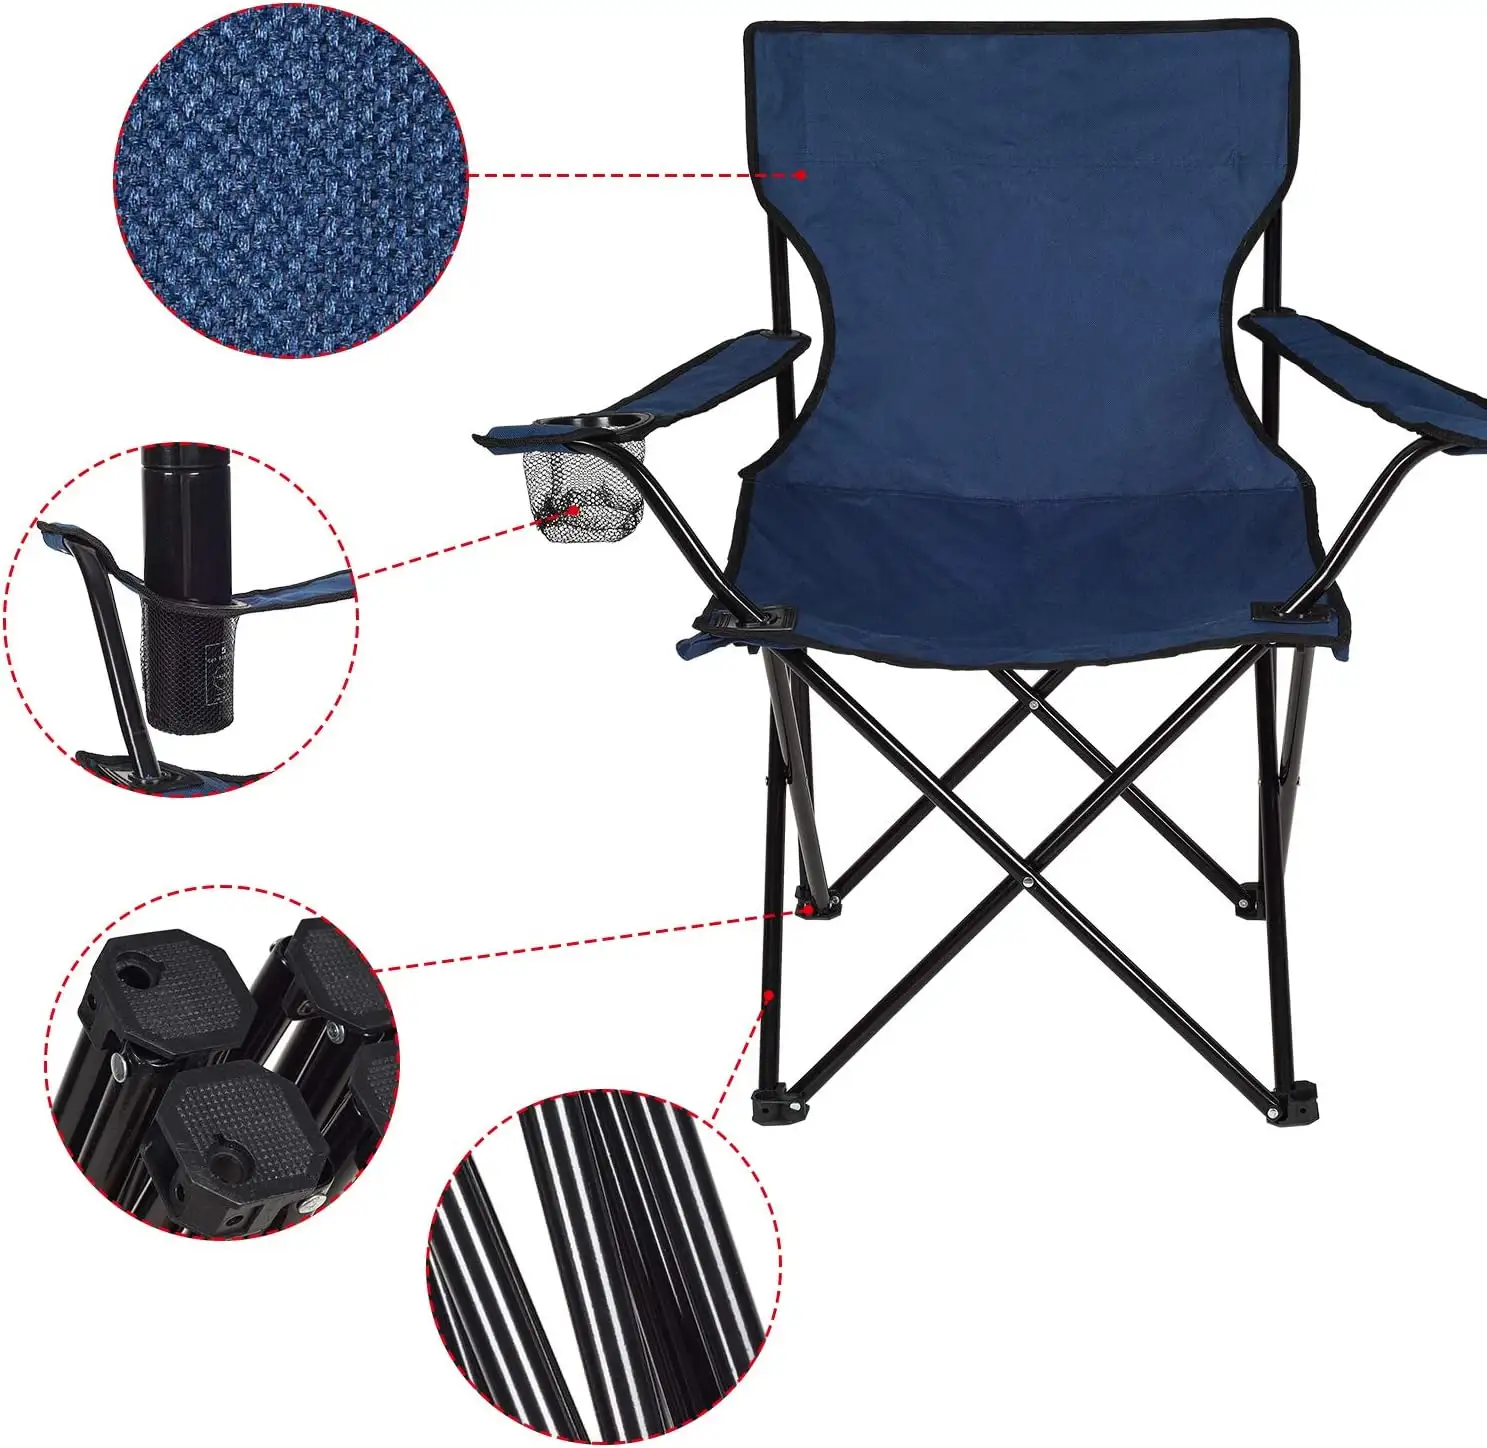 Cadeiras dobráveis portáteis para acampamento, cadeiras leves dobráveis para áreas externas, acampamento, praia, camping